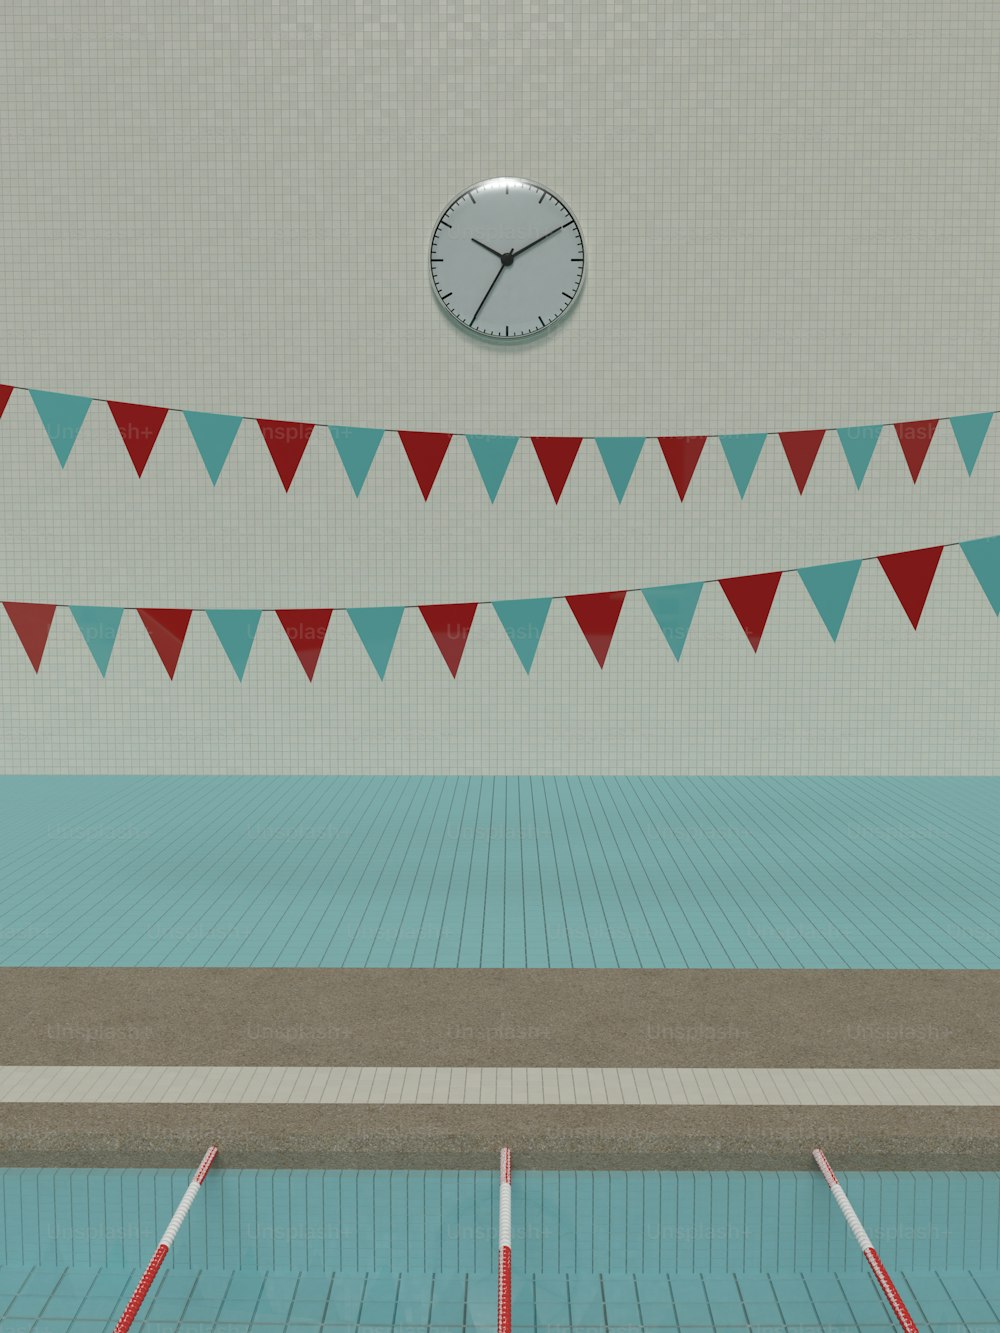 ein Schwimmbad mit einer Uhr an der Wand